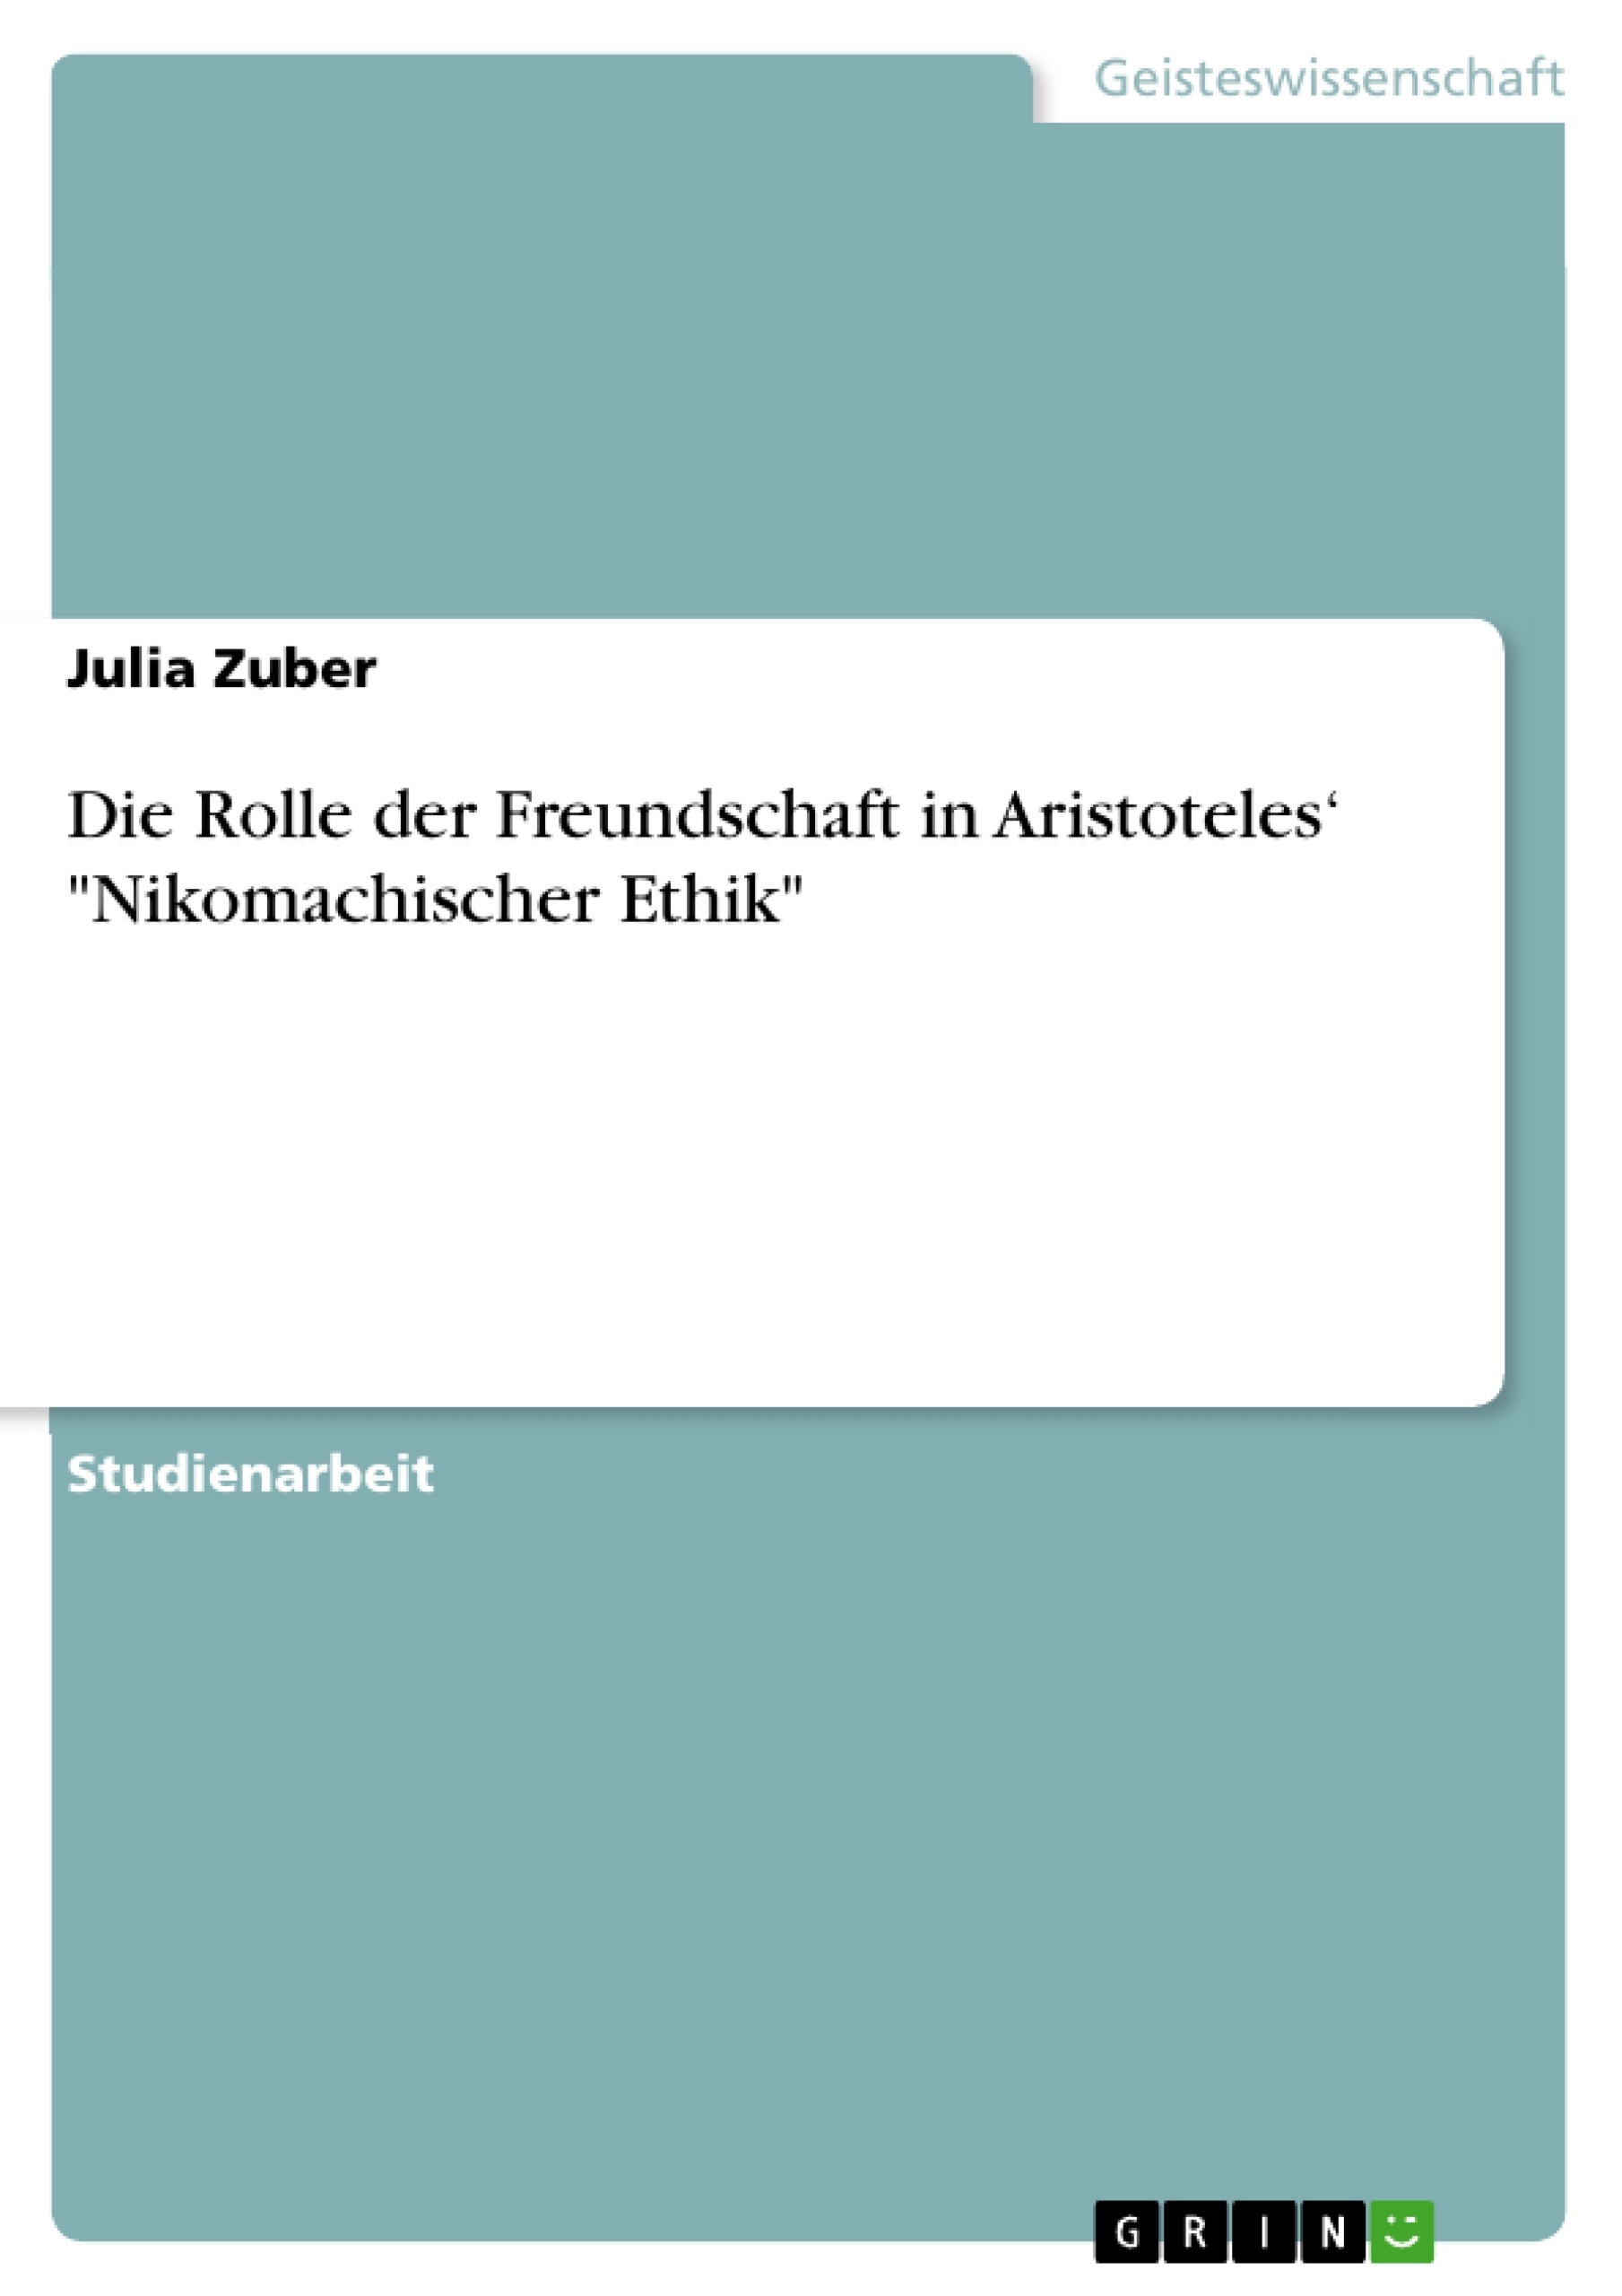 Title: Die Rolle der Freundschaft in Aristoteles‘ "Nikomachischer Ethik"